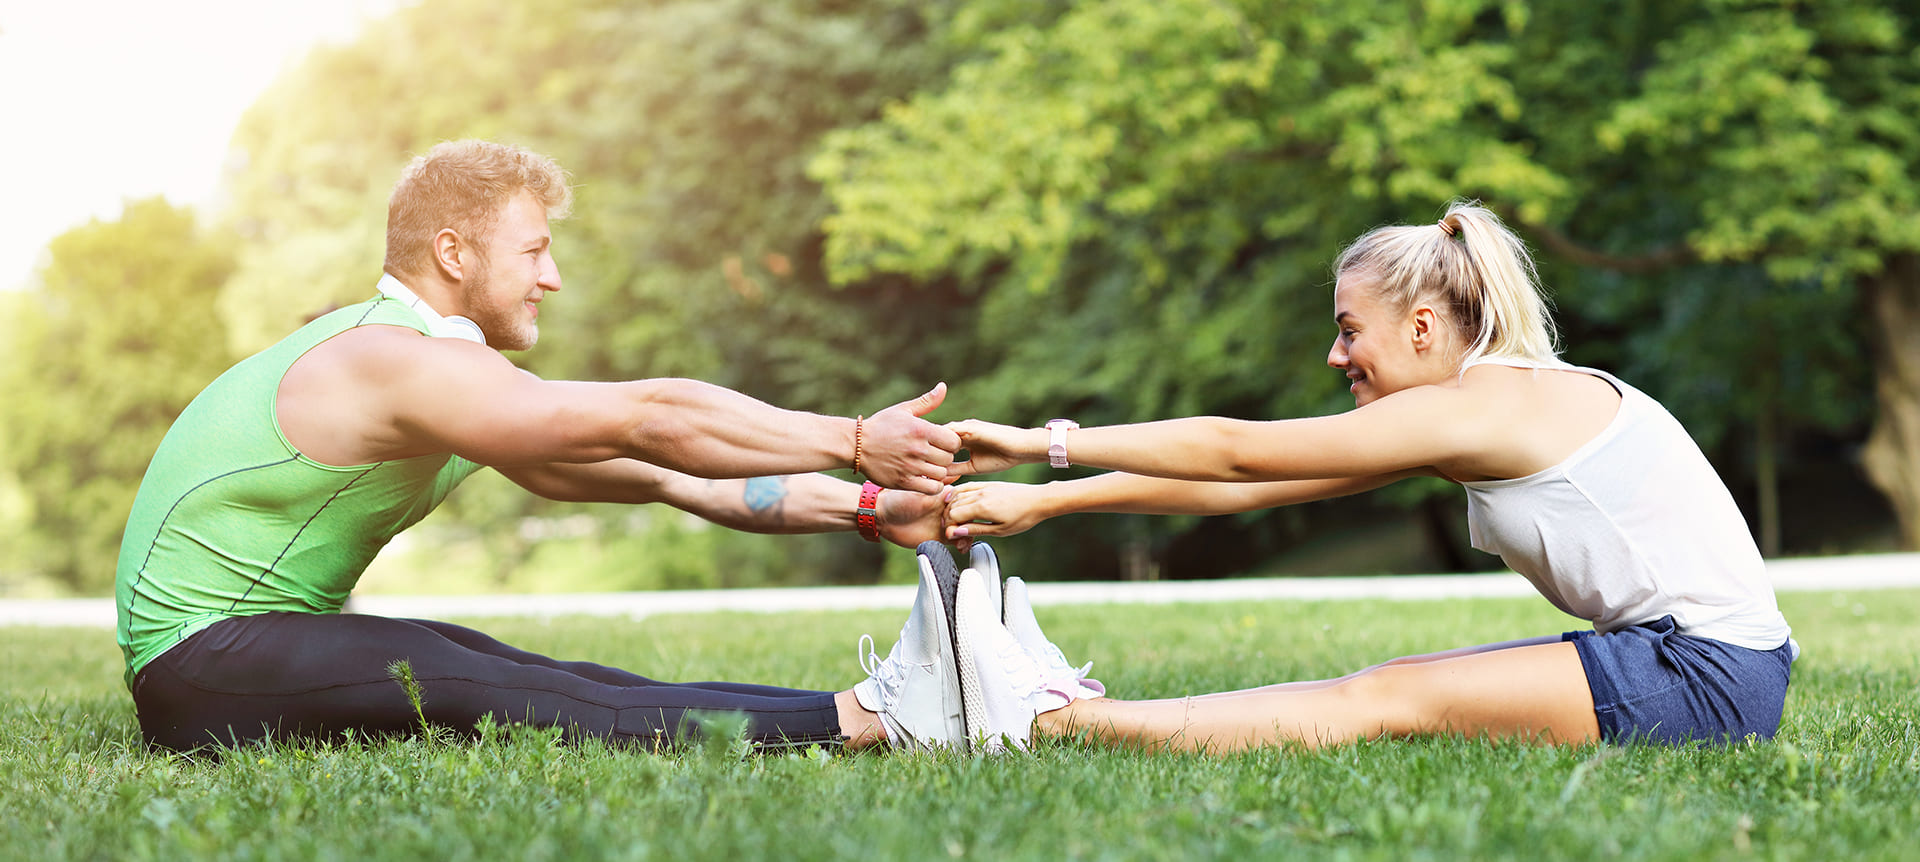 Actividad física es sinónimo de vida saludable, ¿Cuál es tu rutina